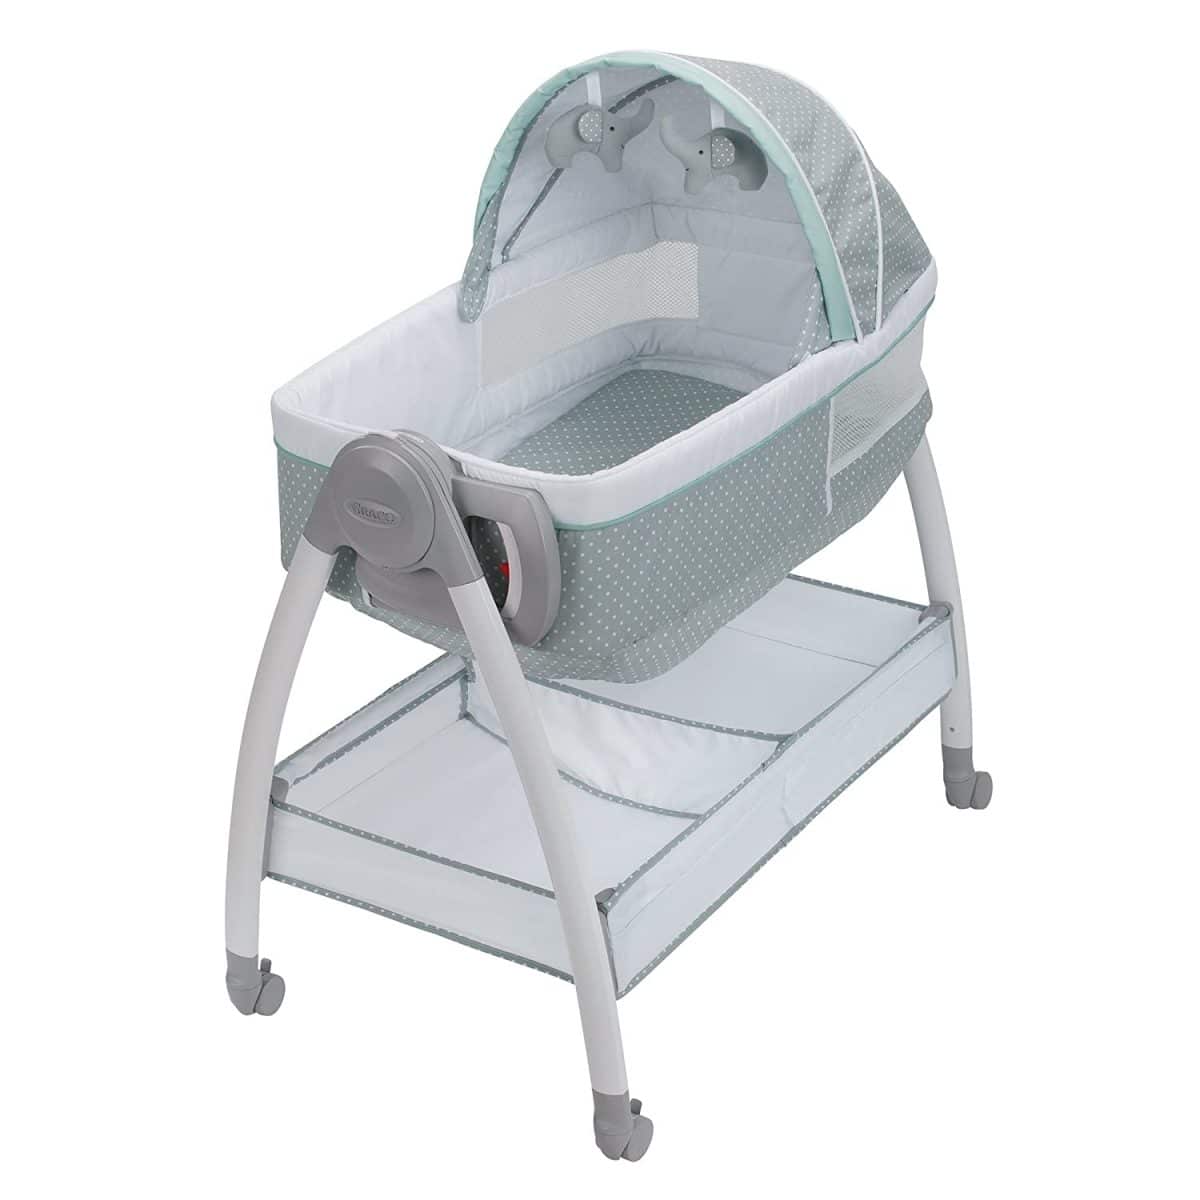 unique baby bassinets